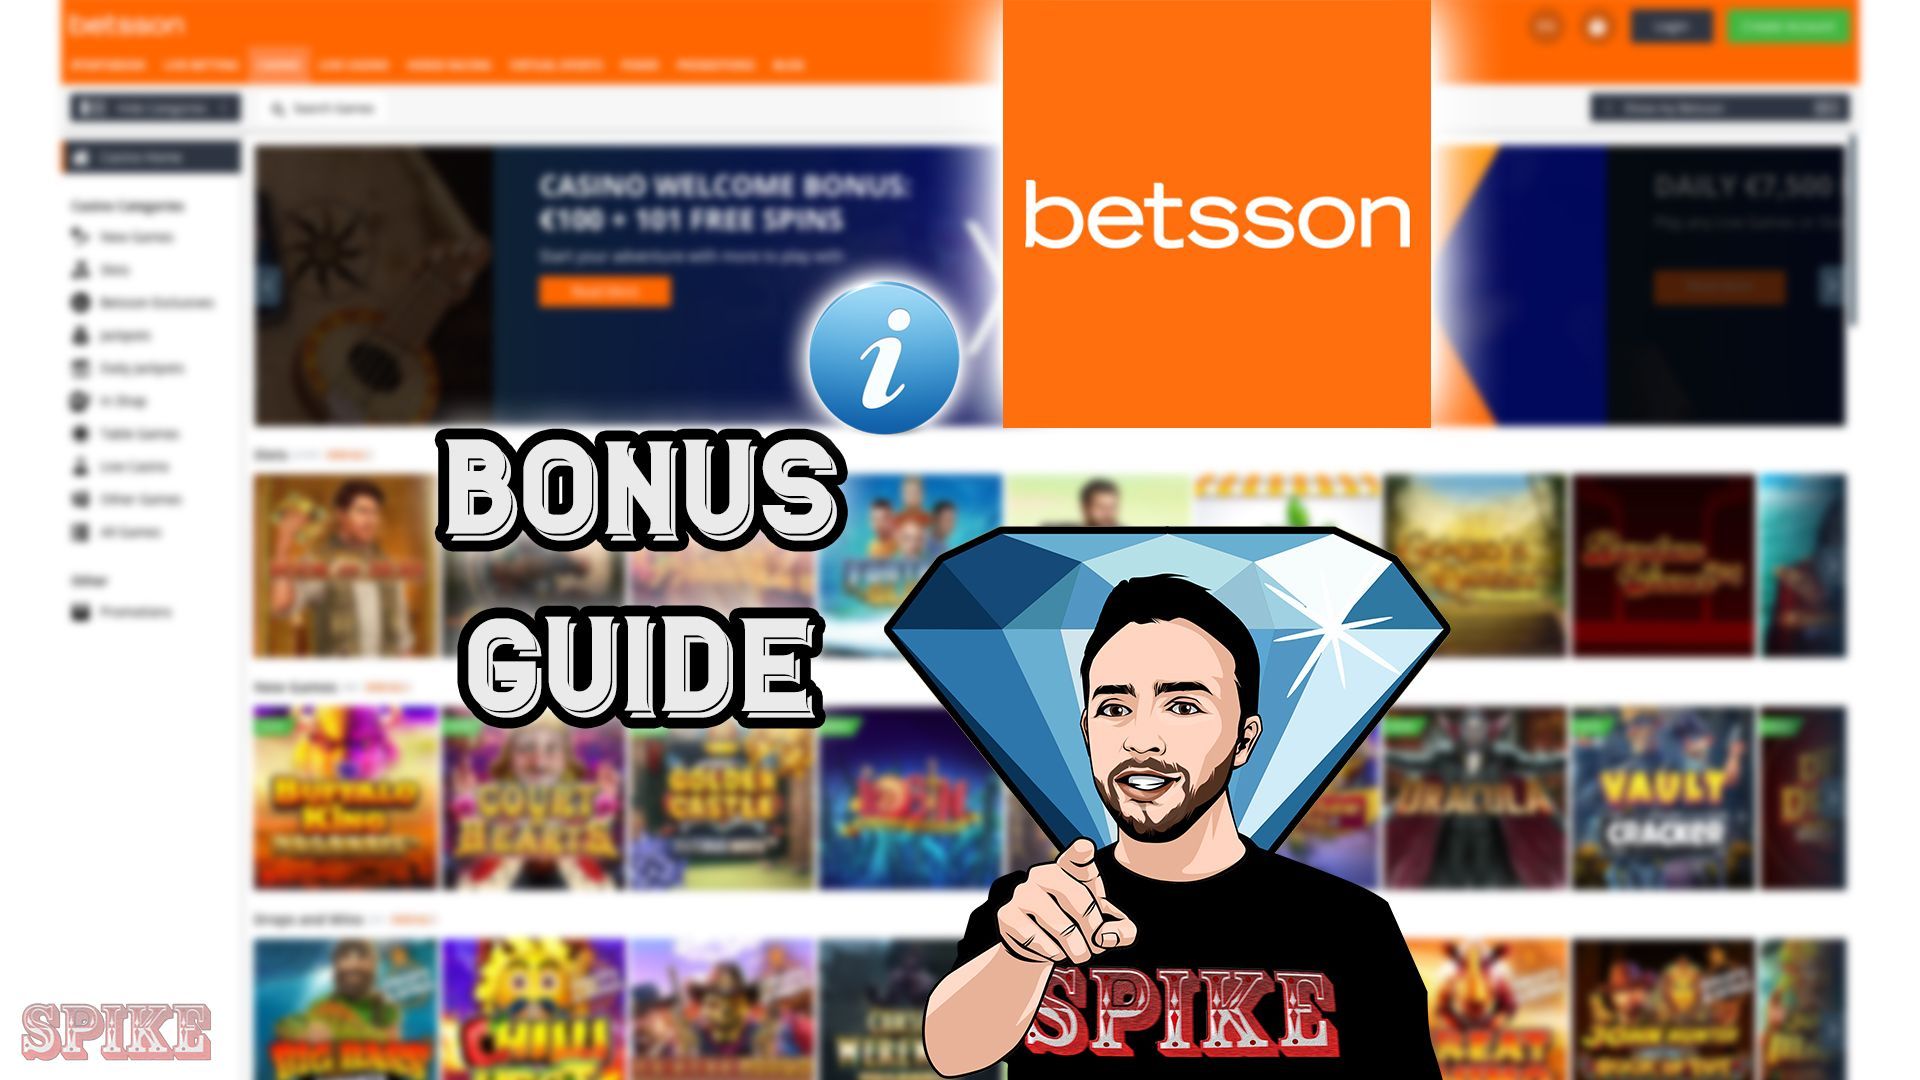 Betsson Casino Online【Full Review & Bonus Offers】